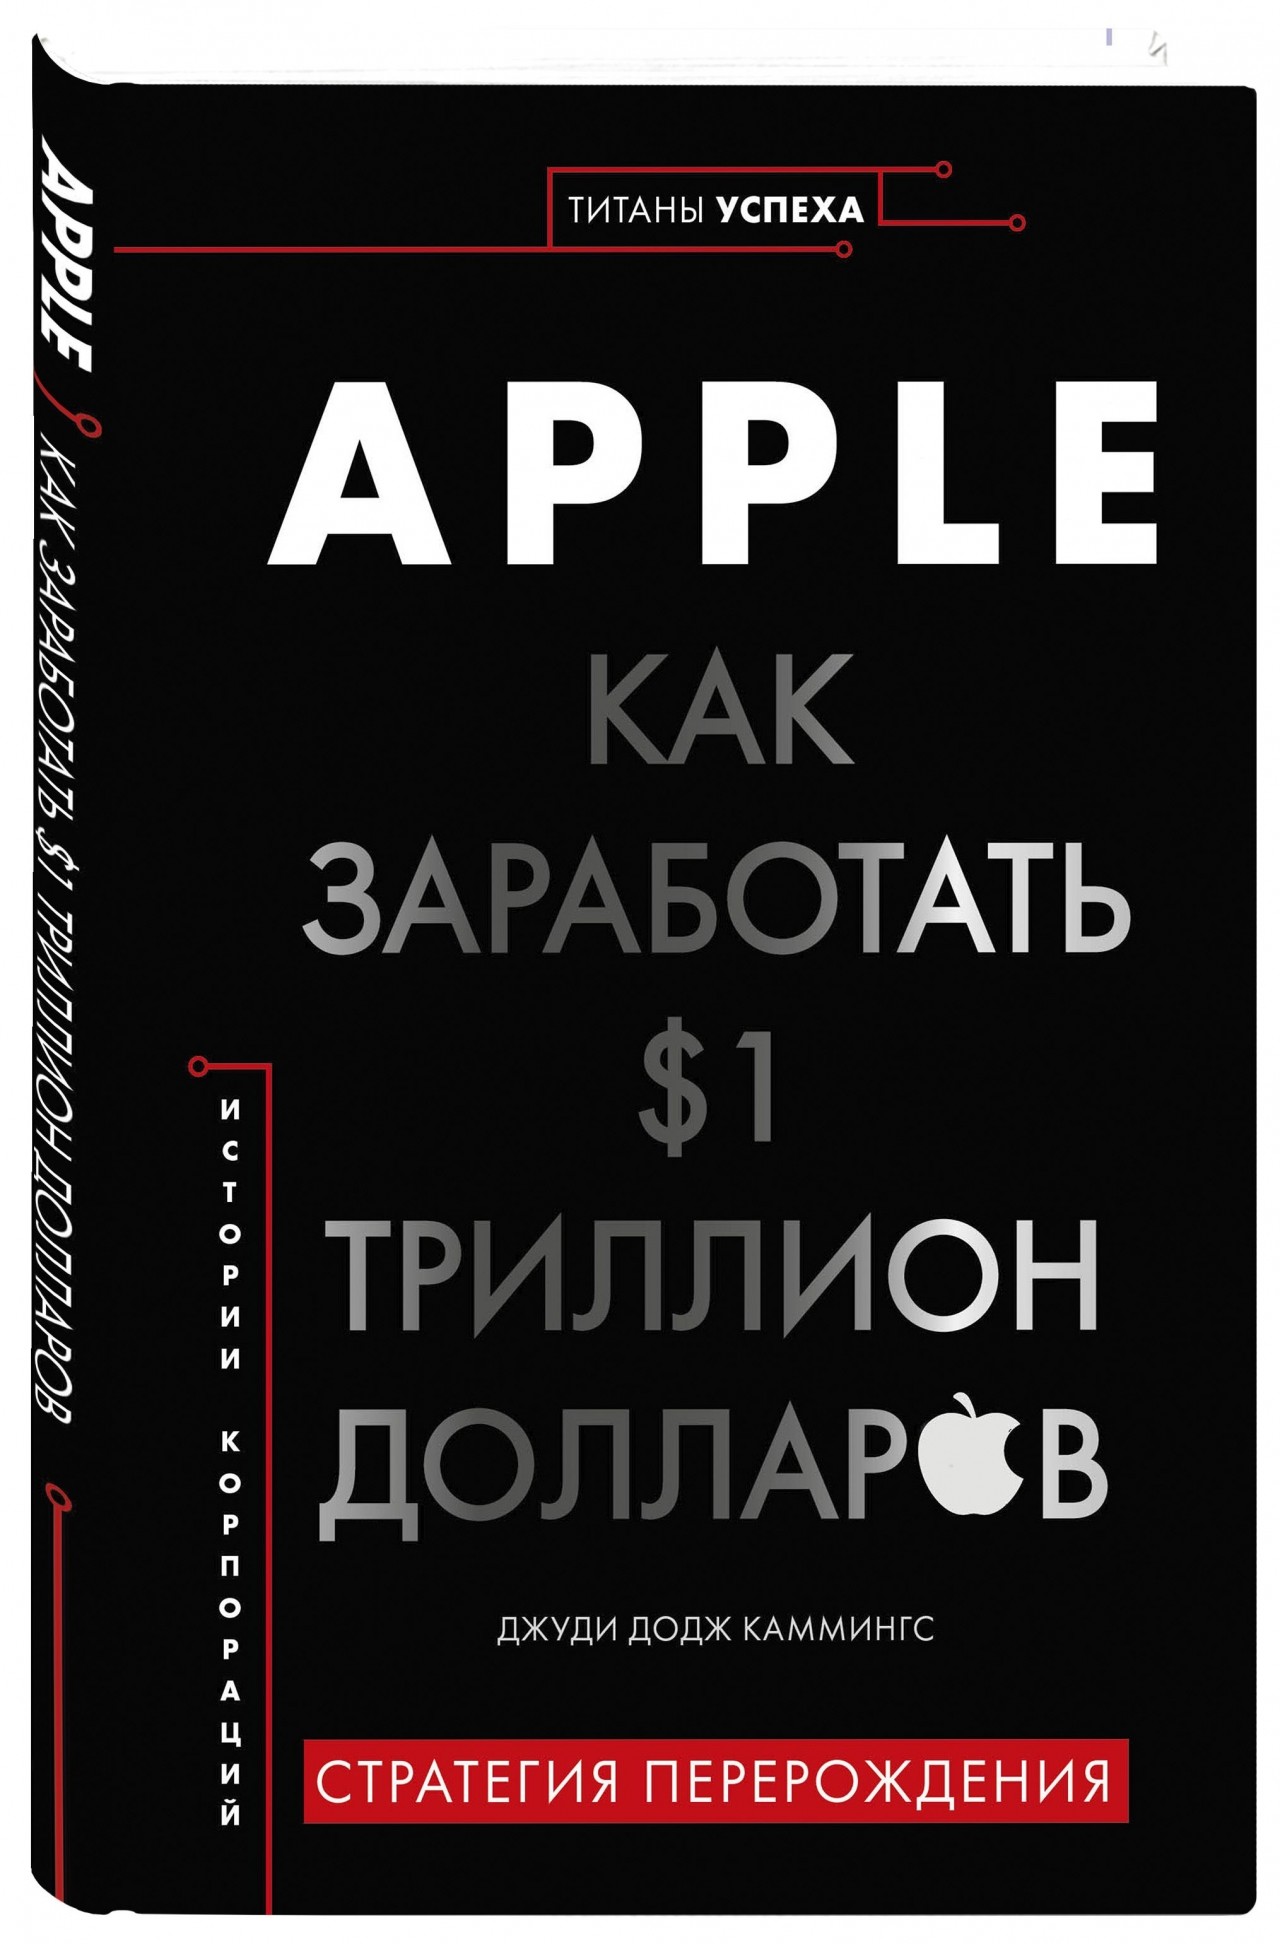 Триллионы книга. Apple как заработать $1 триллион долларов. Книга Apple. ••Apple. Как заработать $1 триллион долларов•• Джуди Каммингс. Каммингс, Джуди Додж. Apple. Как заработать 1 триллион долларов.